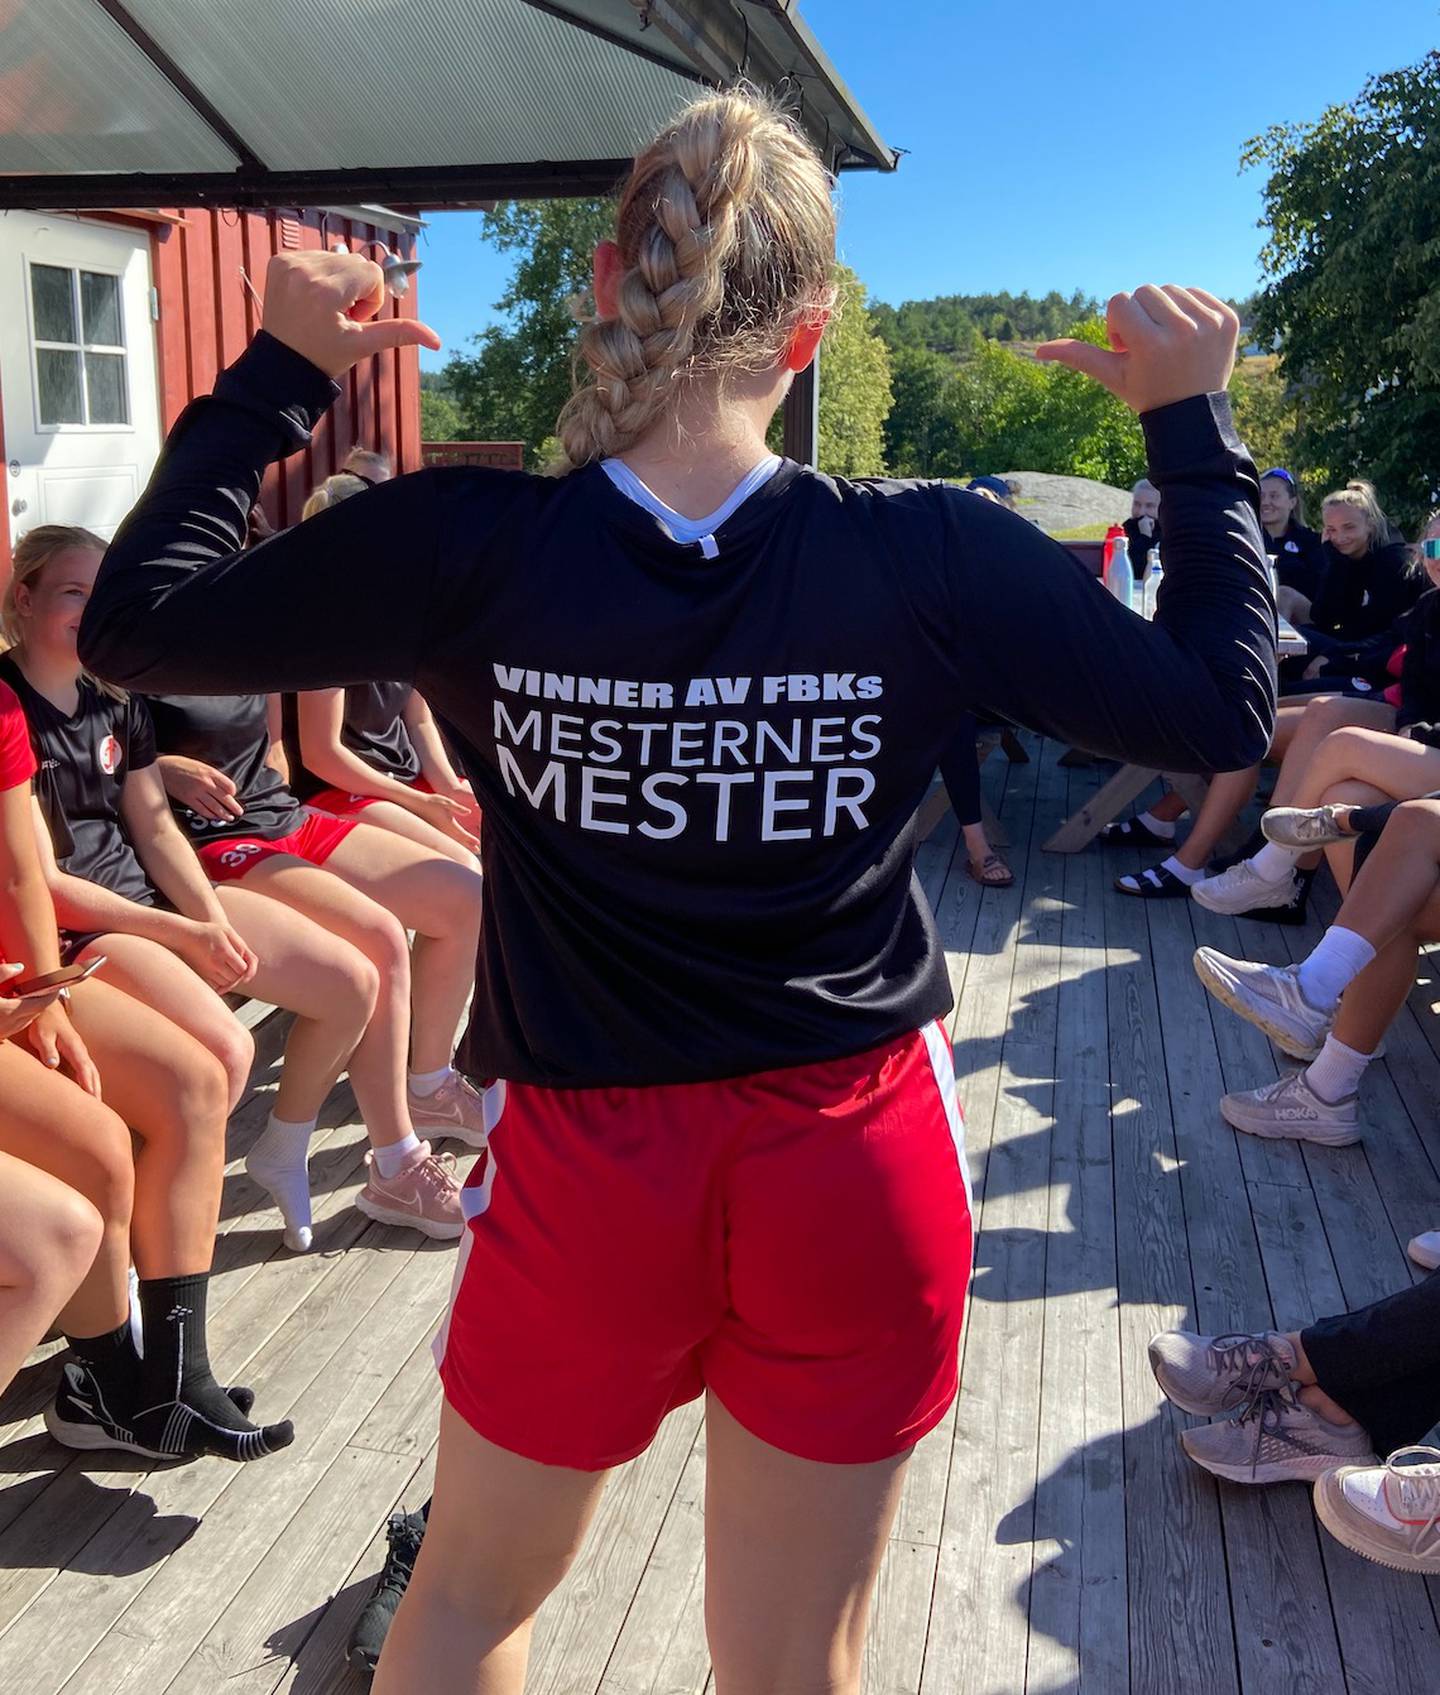 Rekruttspiller Konstanse Nilsen Stang kunne stolt posere foran lagvenninnene i genseren som beviser at hun er Mesternes mester på Solhaug.